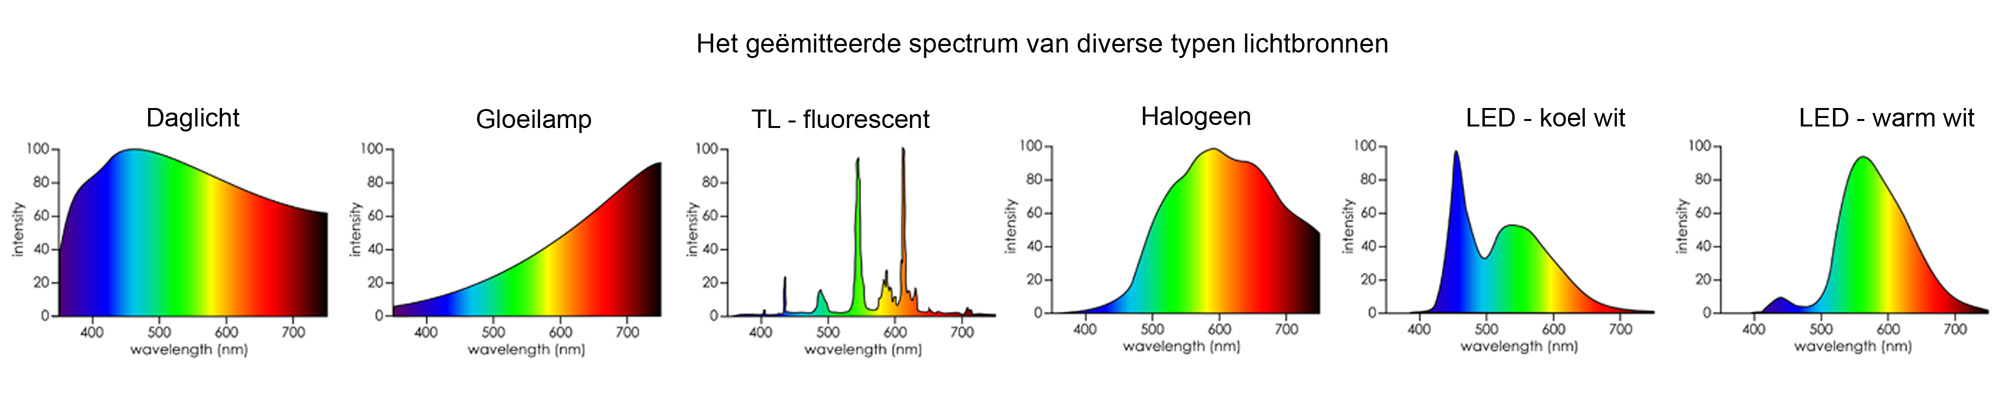 Spectrum diverse Lichtbronnen - Licht in het